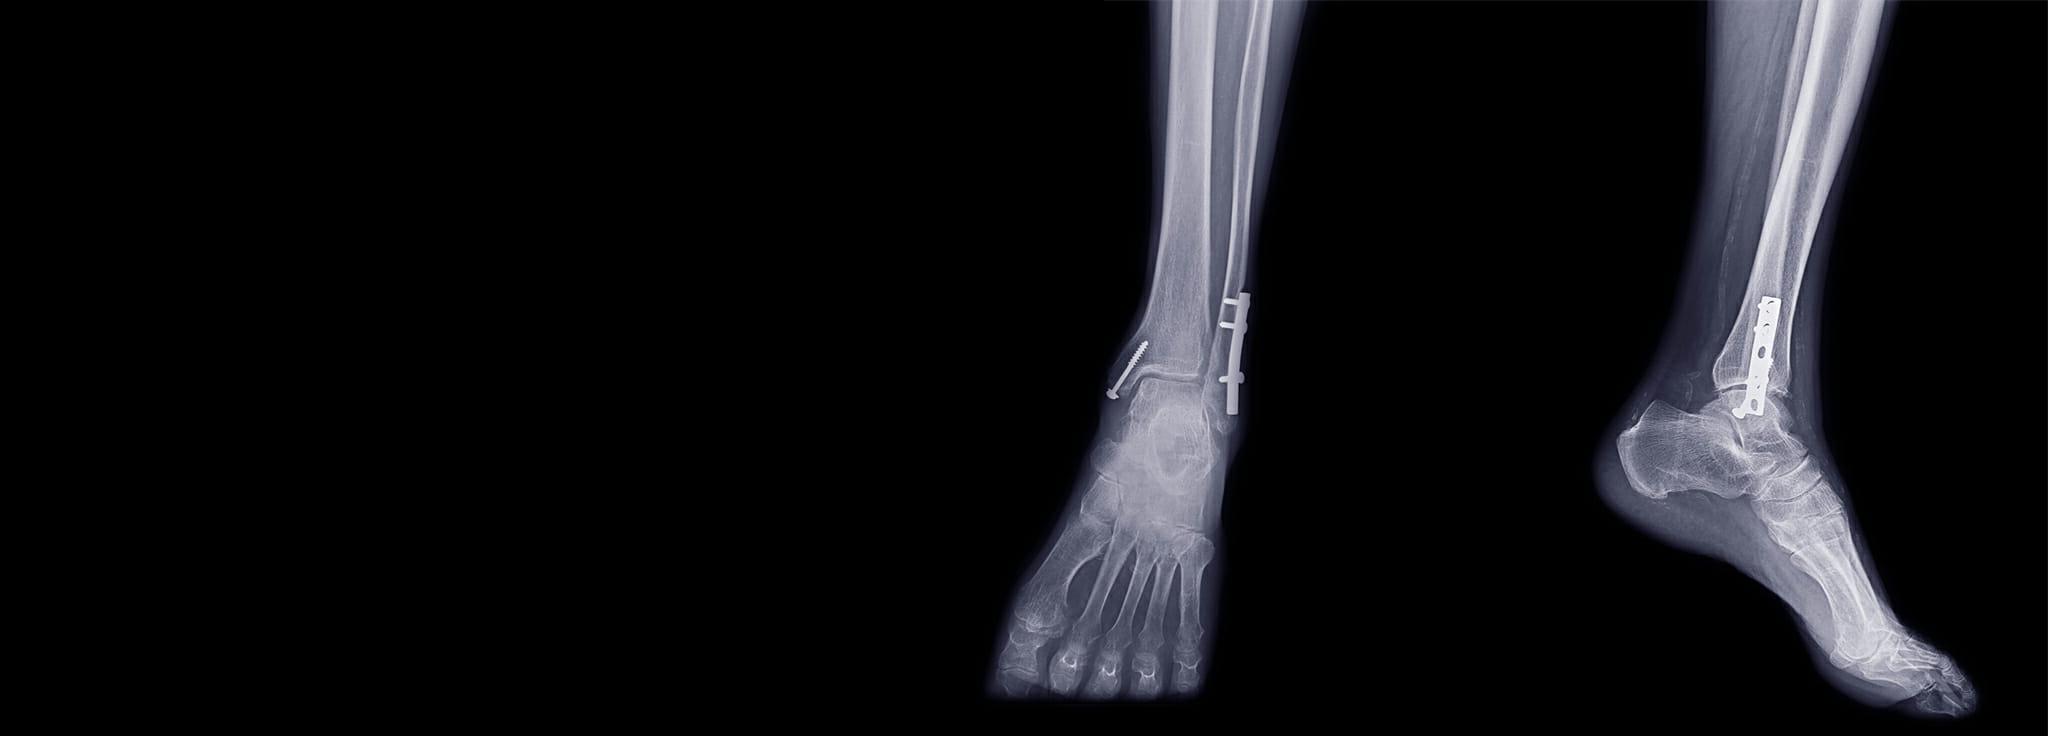 装有医用植入物和螺钉的足部x光片